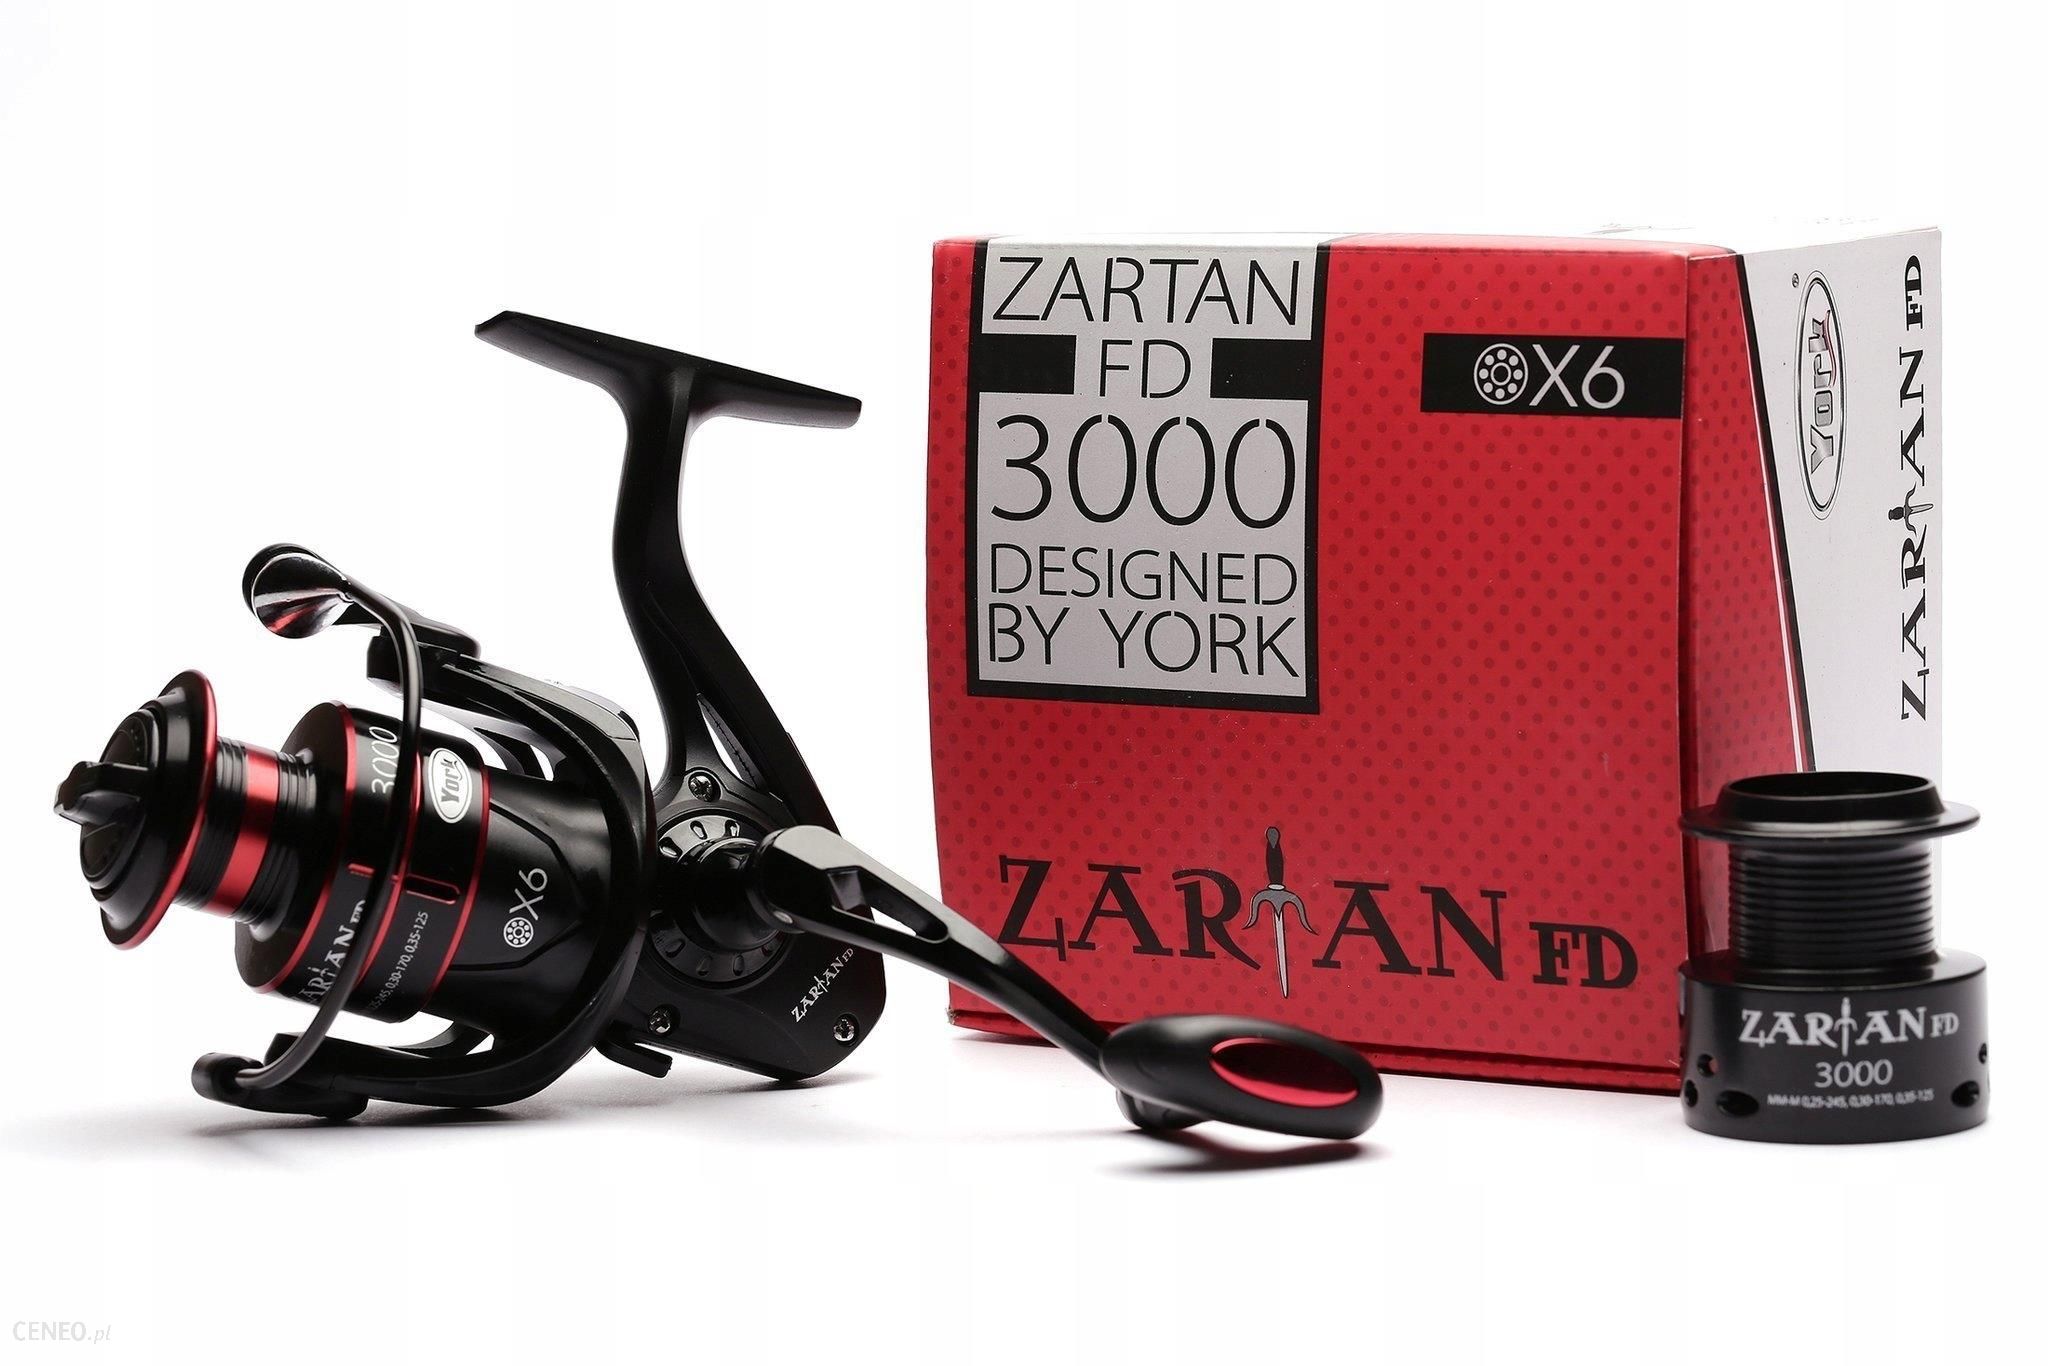 Uniwersalny Kołowrotek York Zartan 3000FD